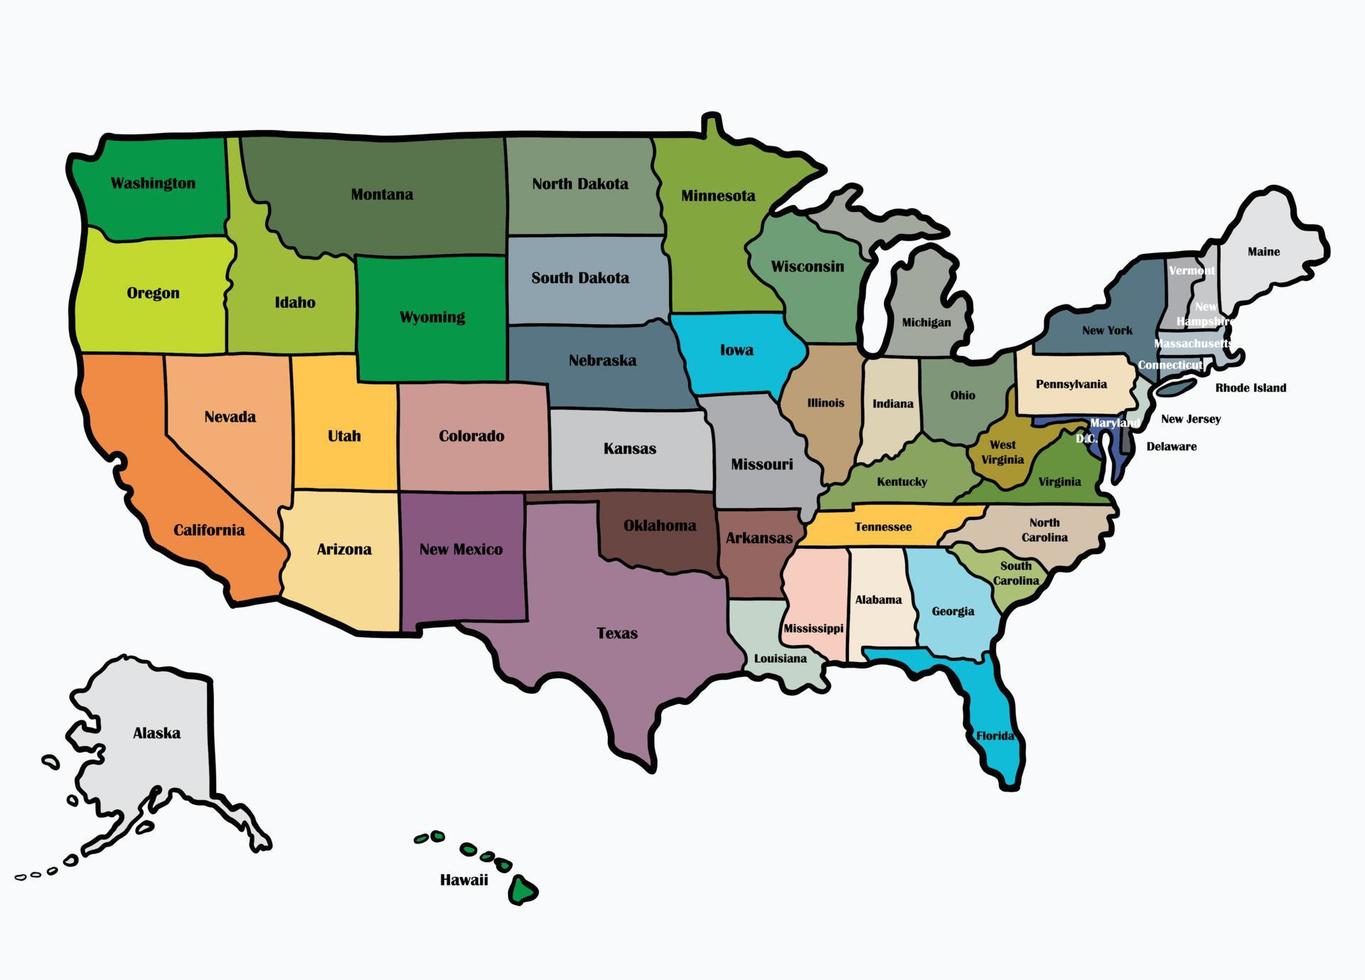 scarabocchiare il disegno a mano libera della mappa degli stati uniti d'america. v vettore